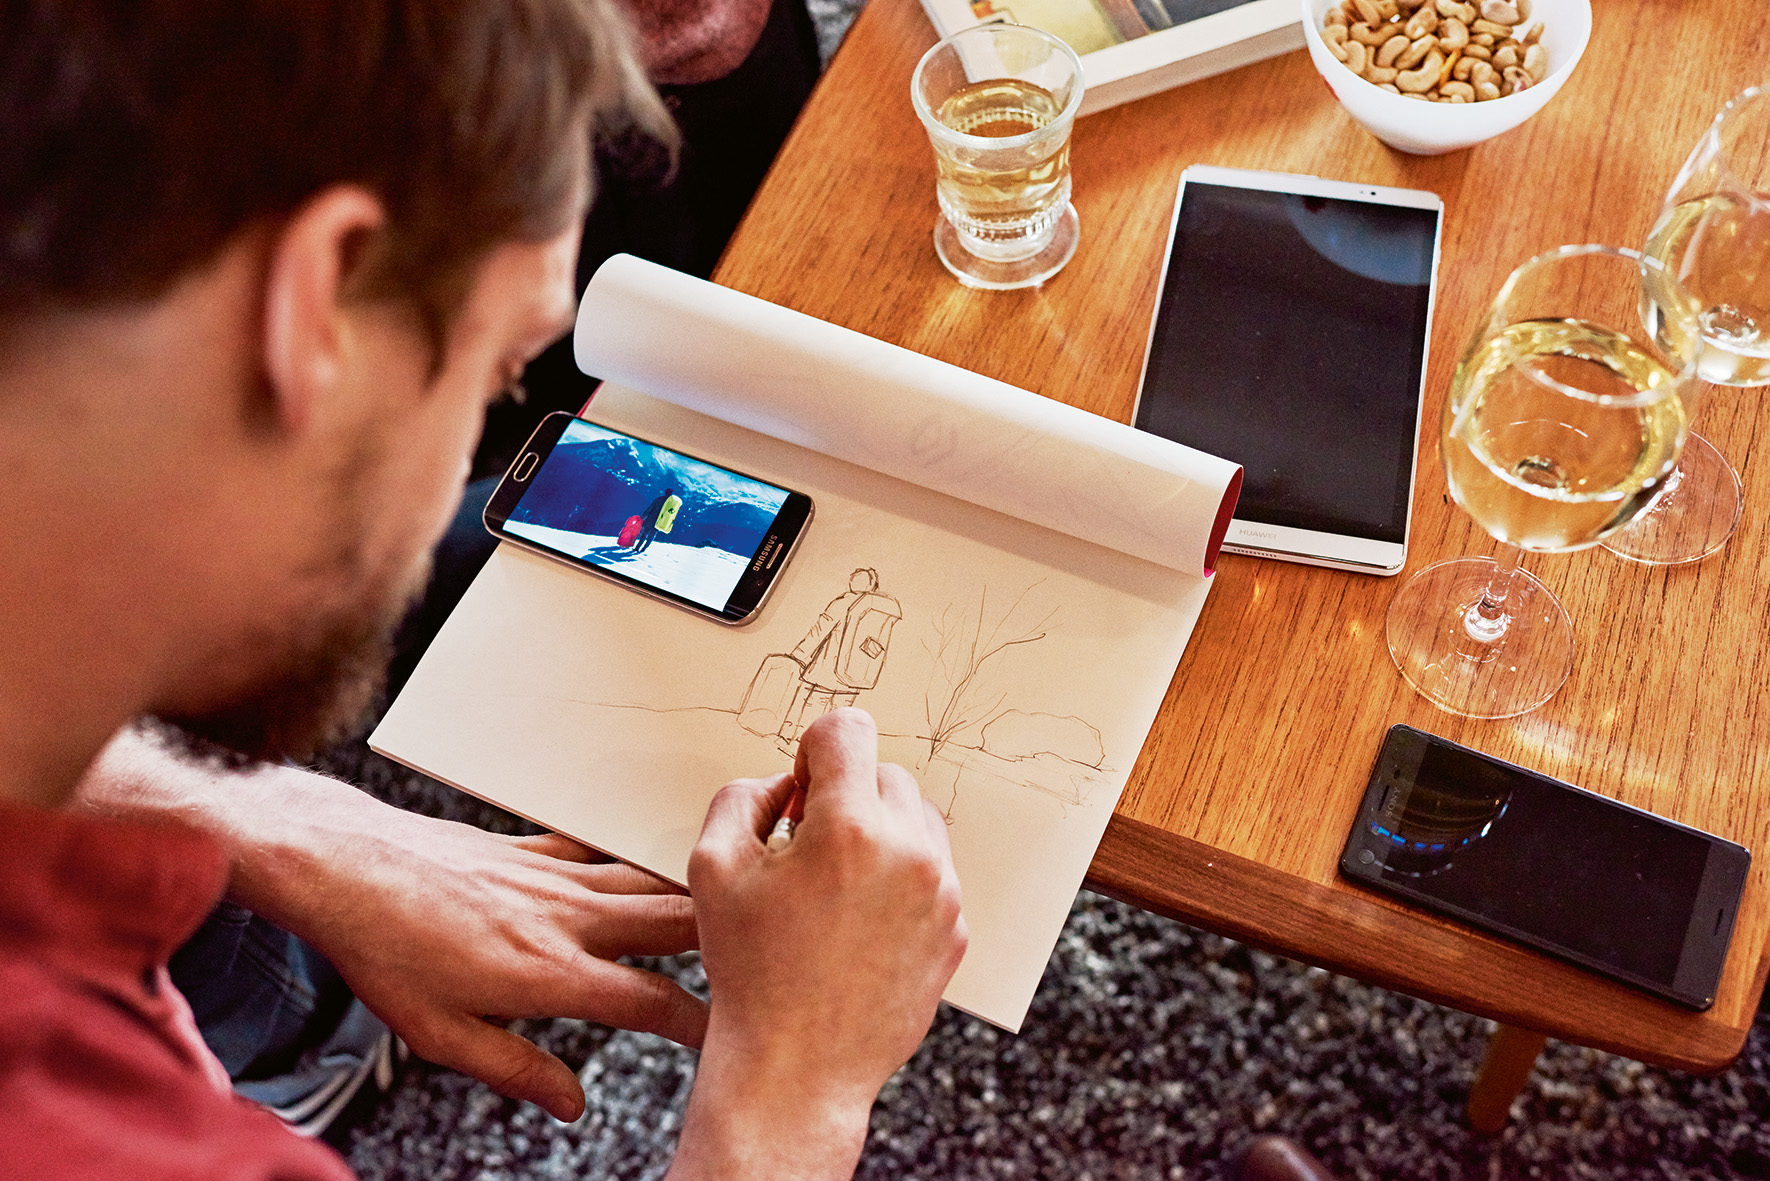 Mann arbeitet mit Smartphone an einer Zeichnung